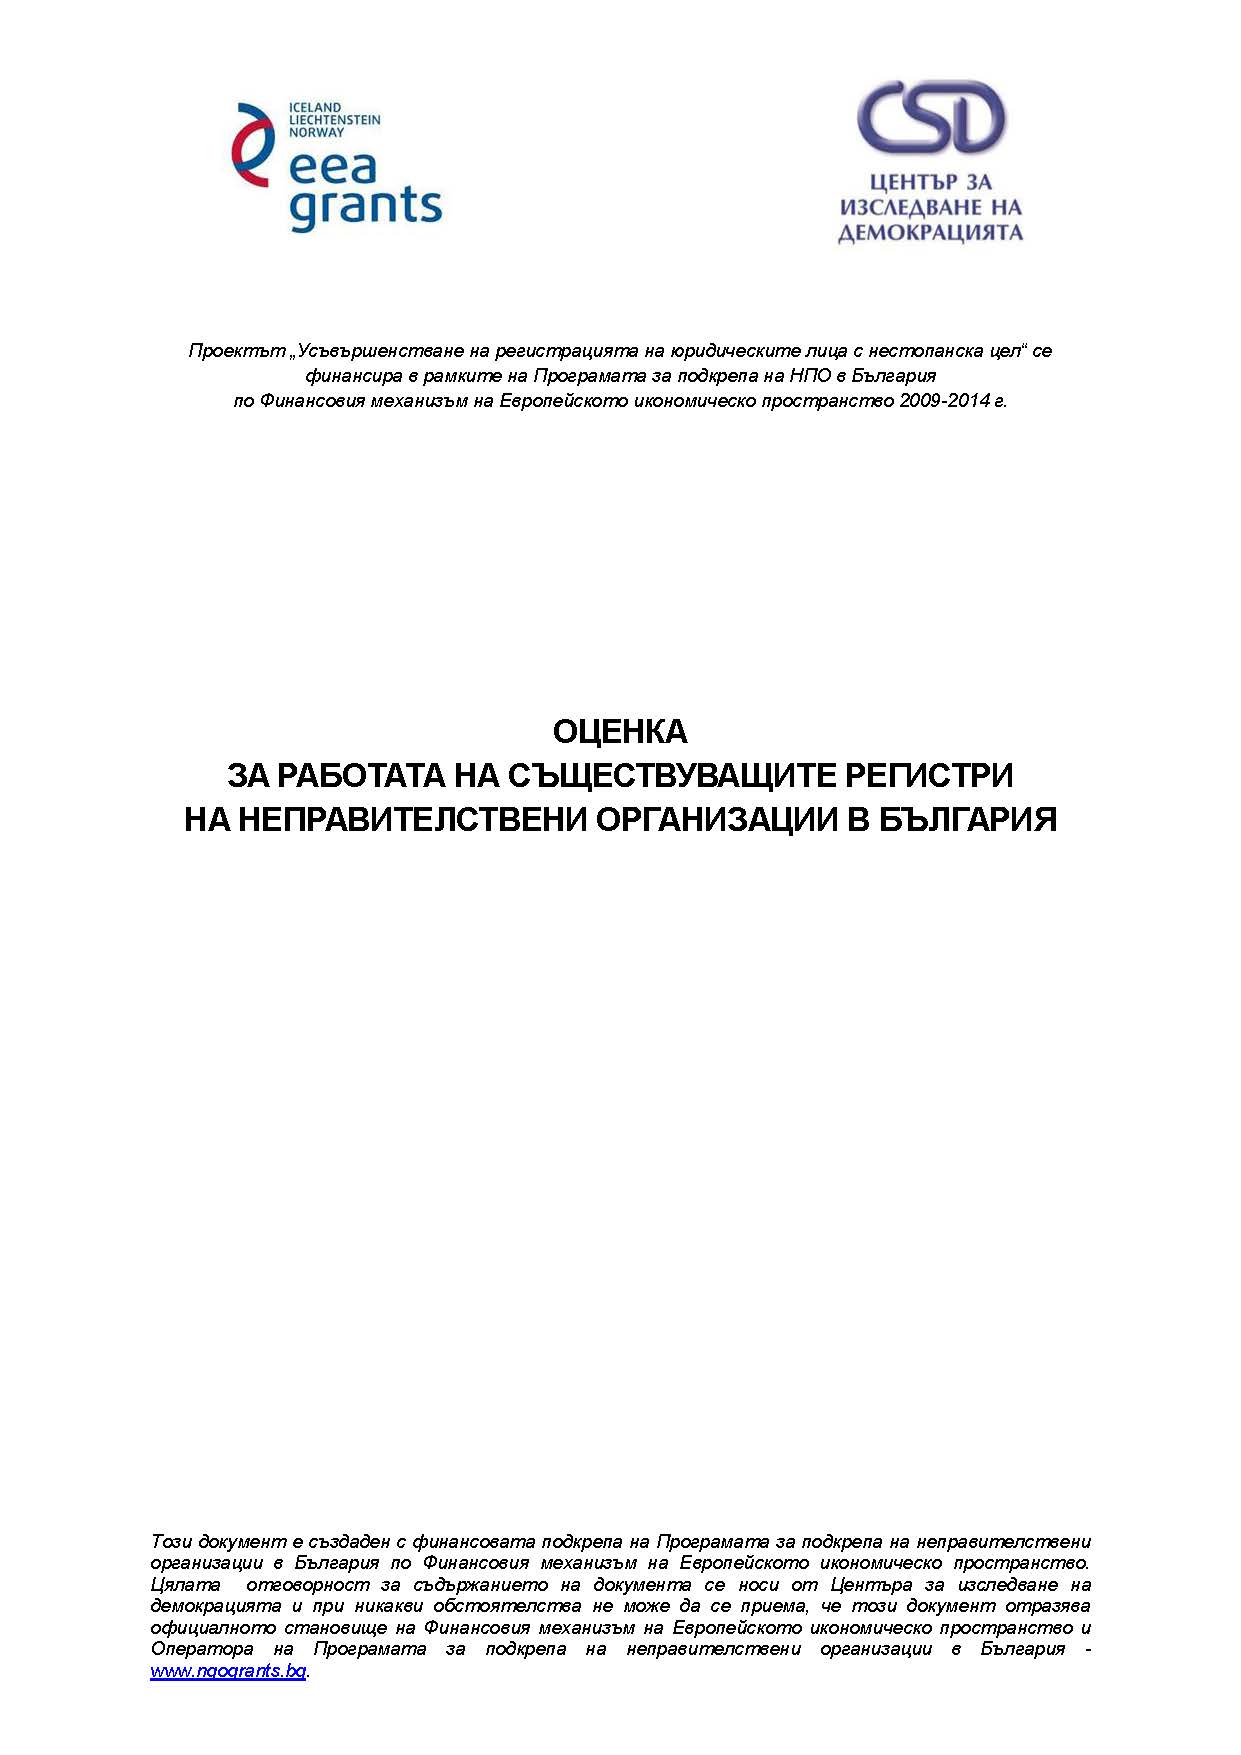 Оценка за работата на съществуващите регистри на неправителствените организации в България